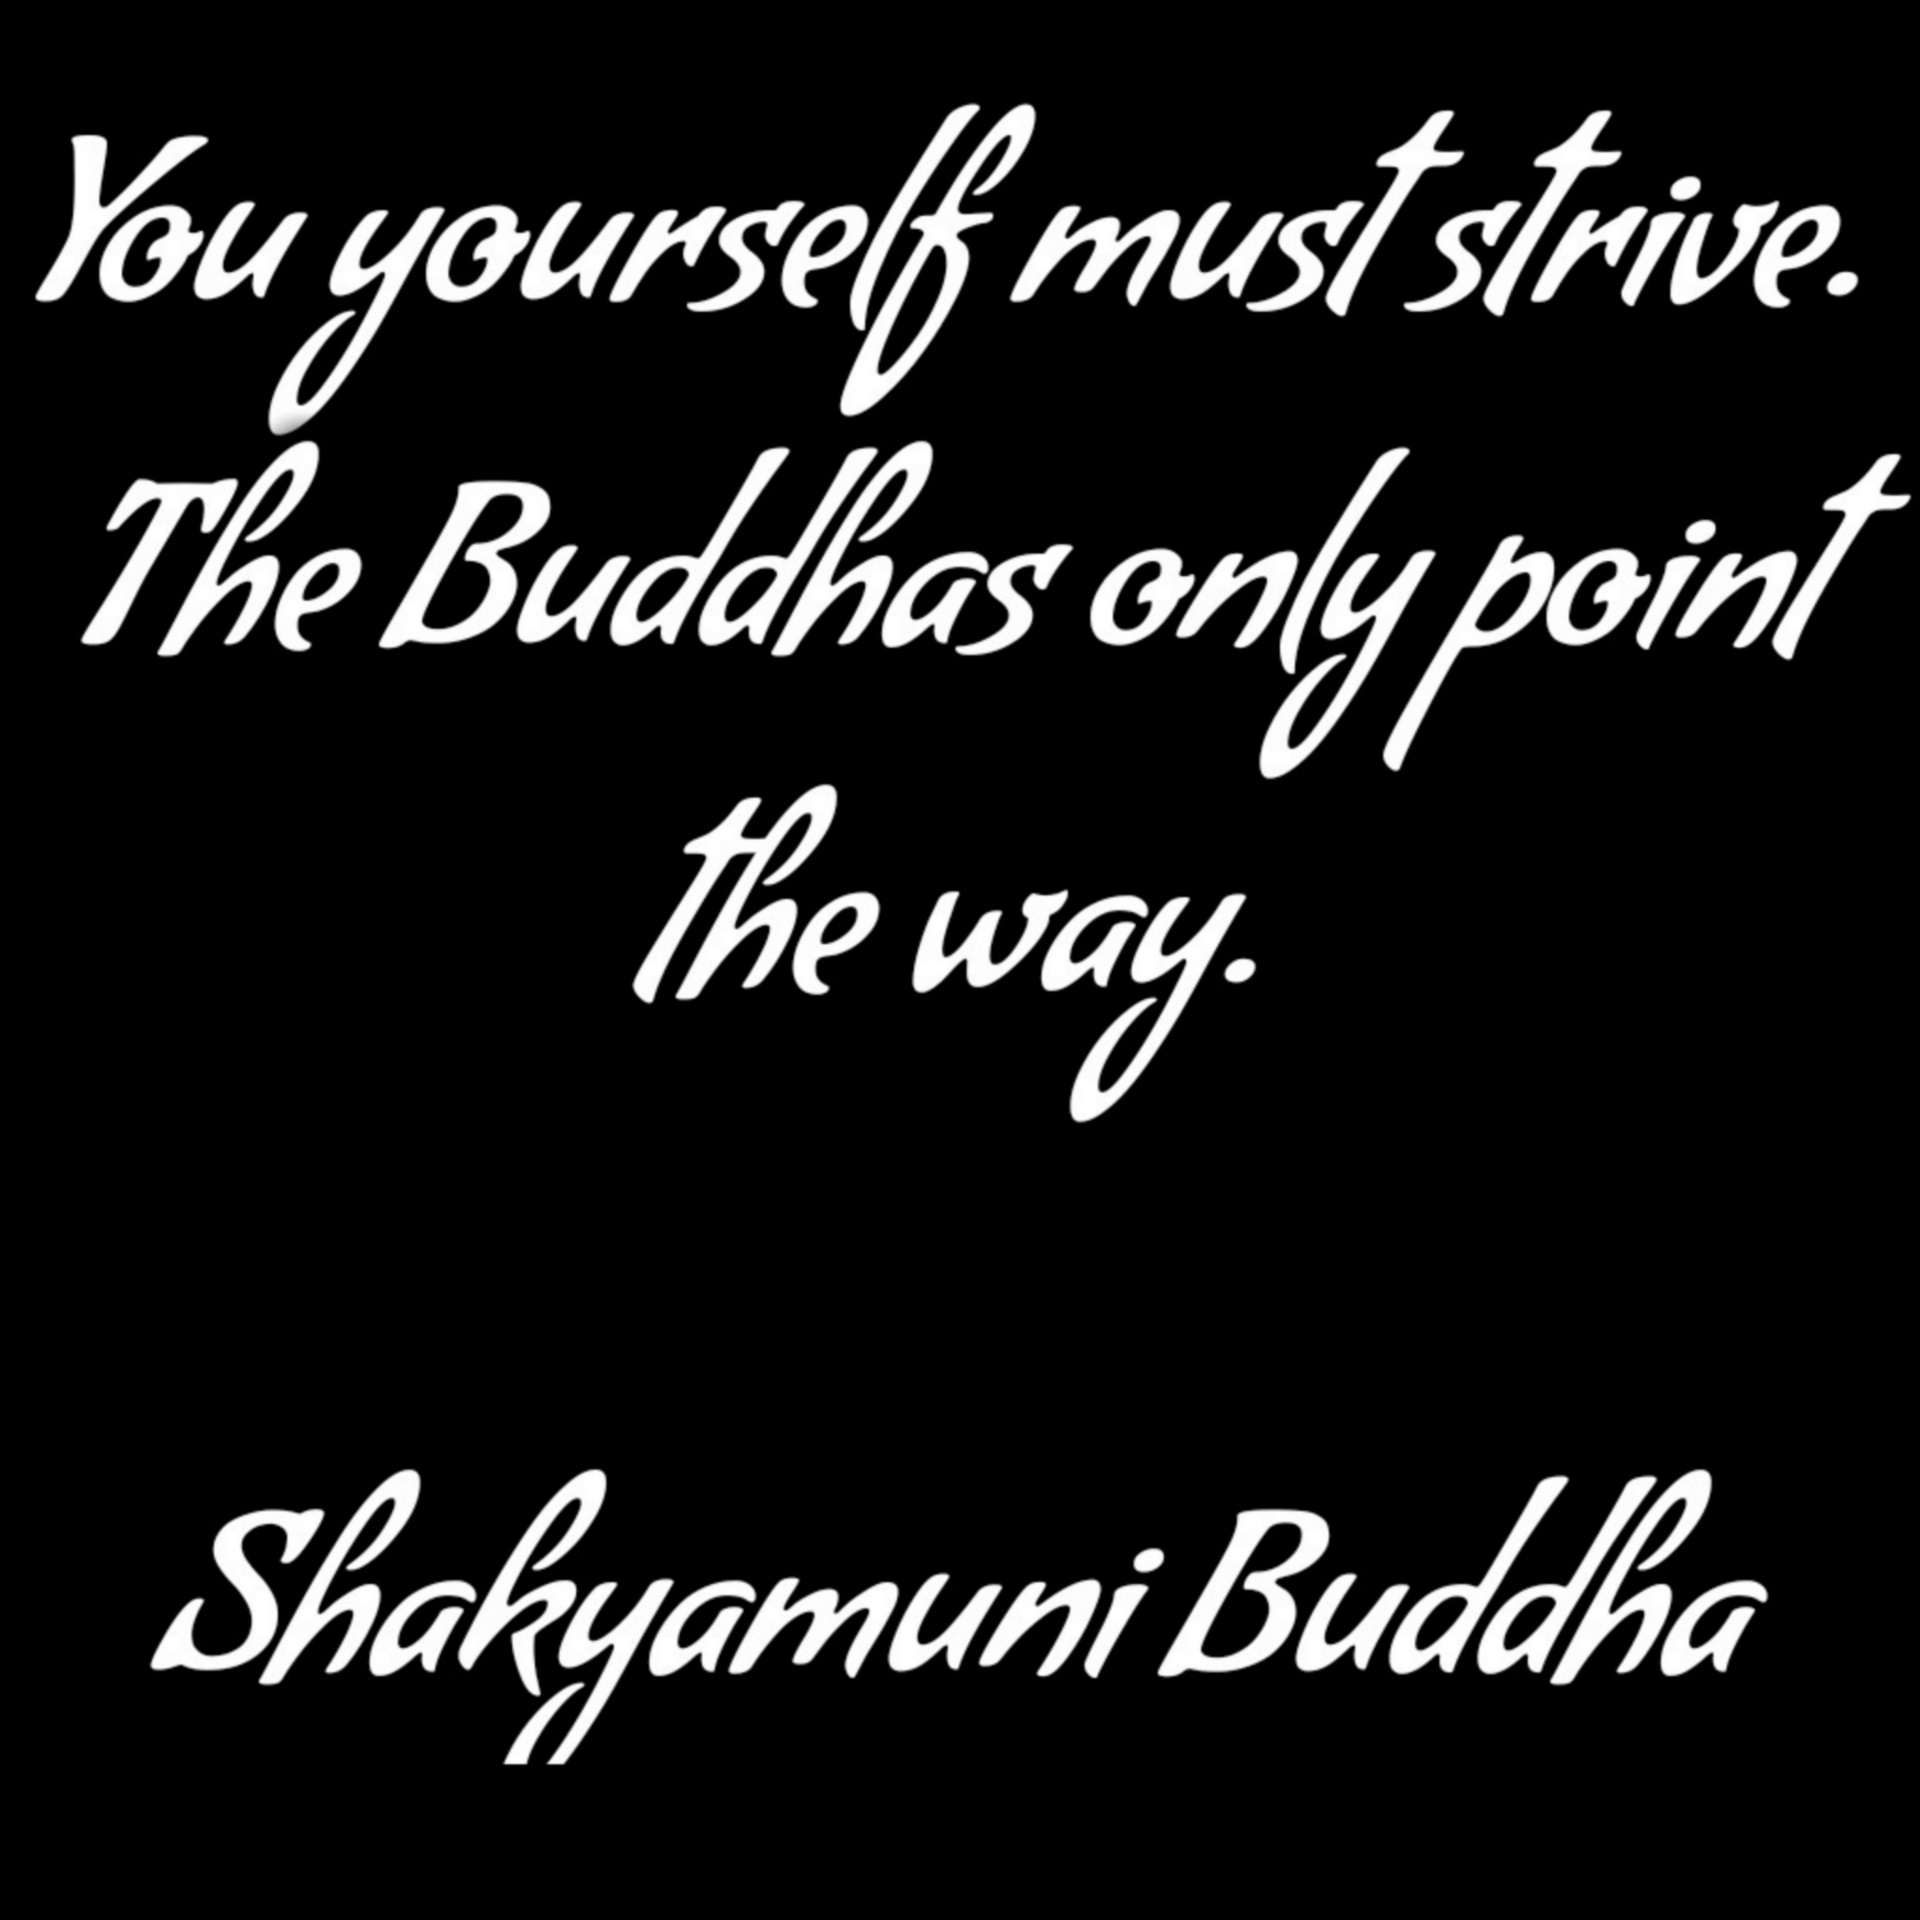 De boeddha's wijzen alleen de weg